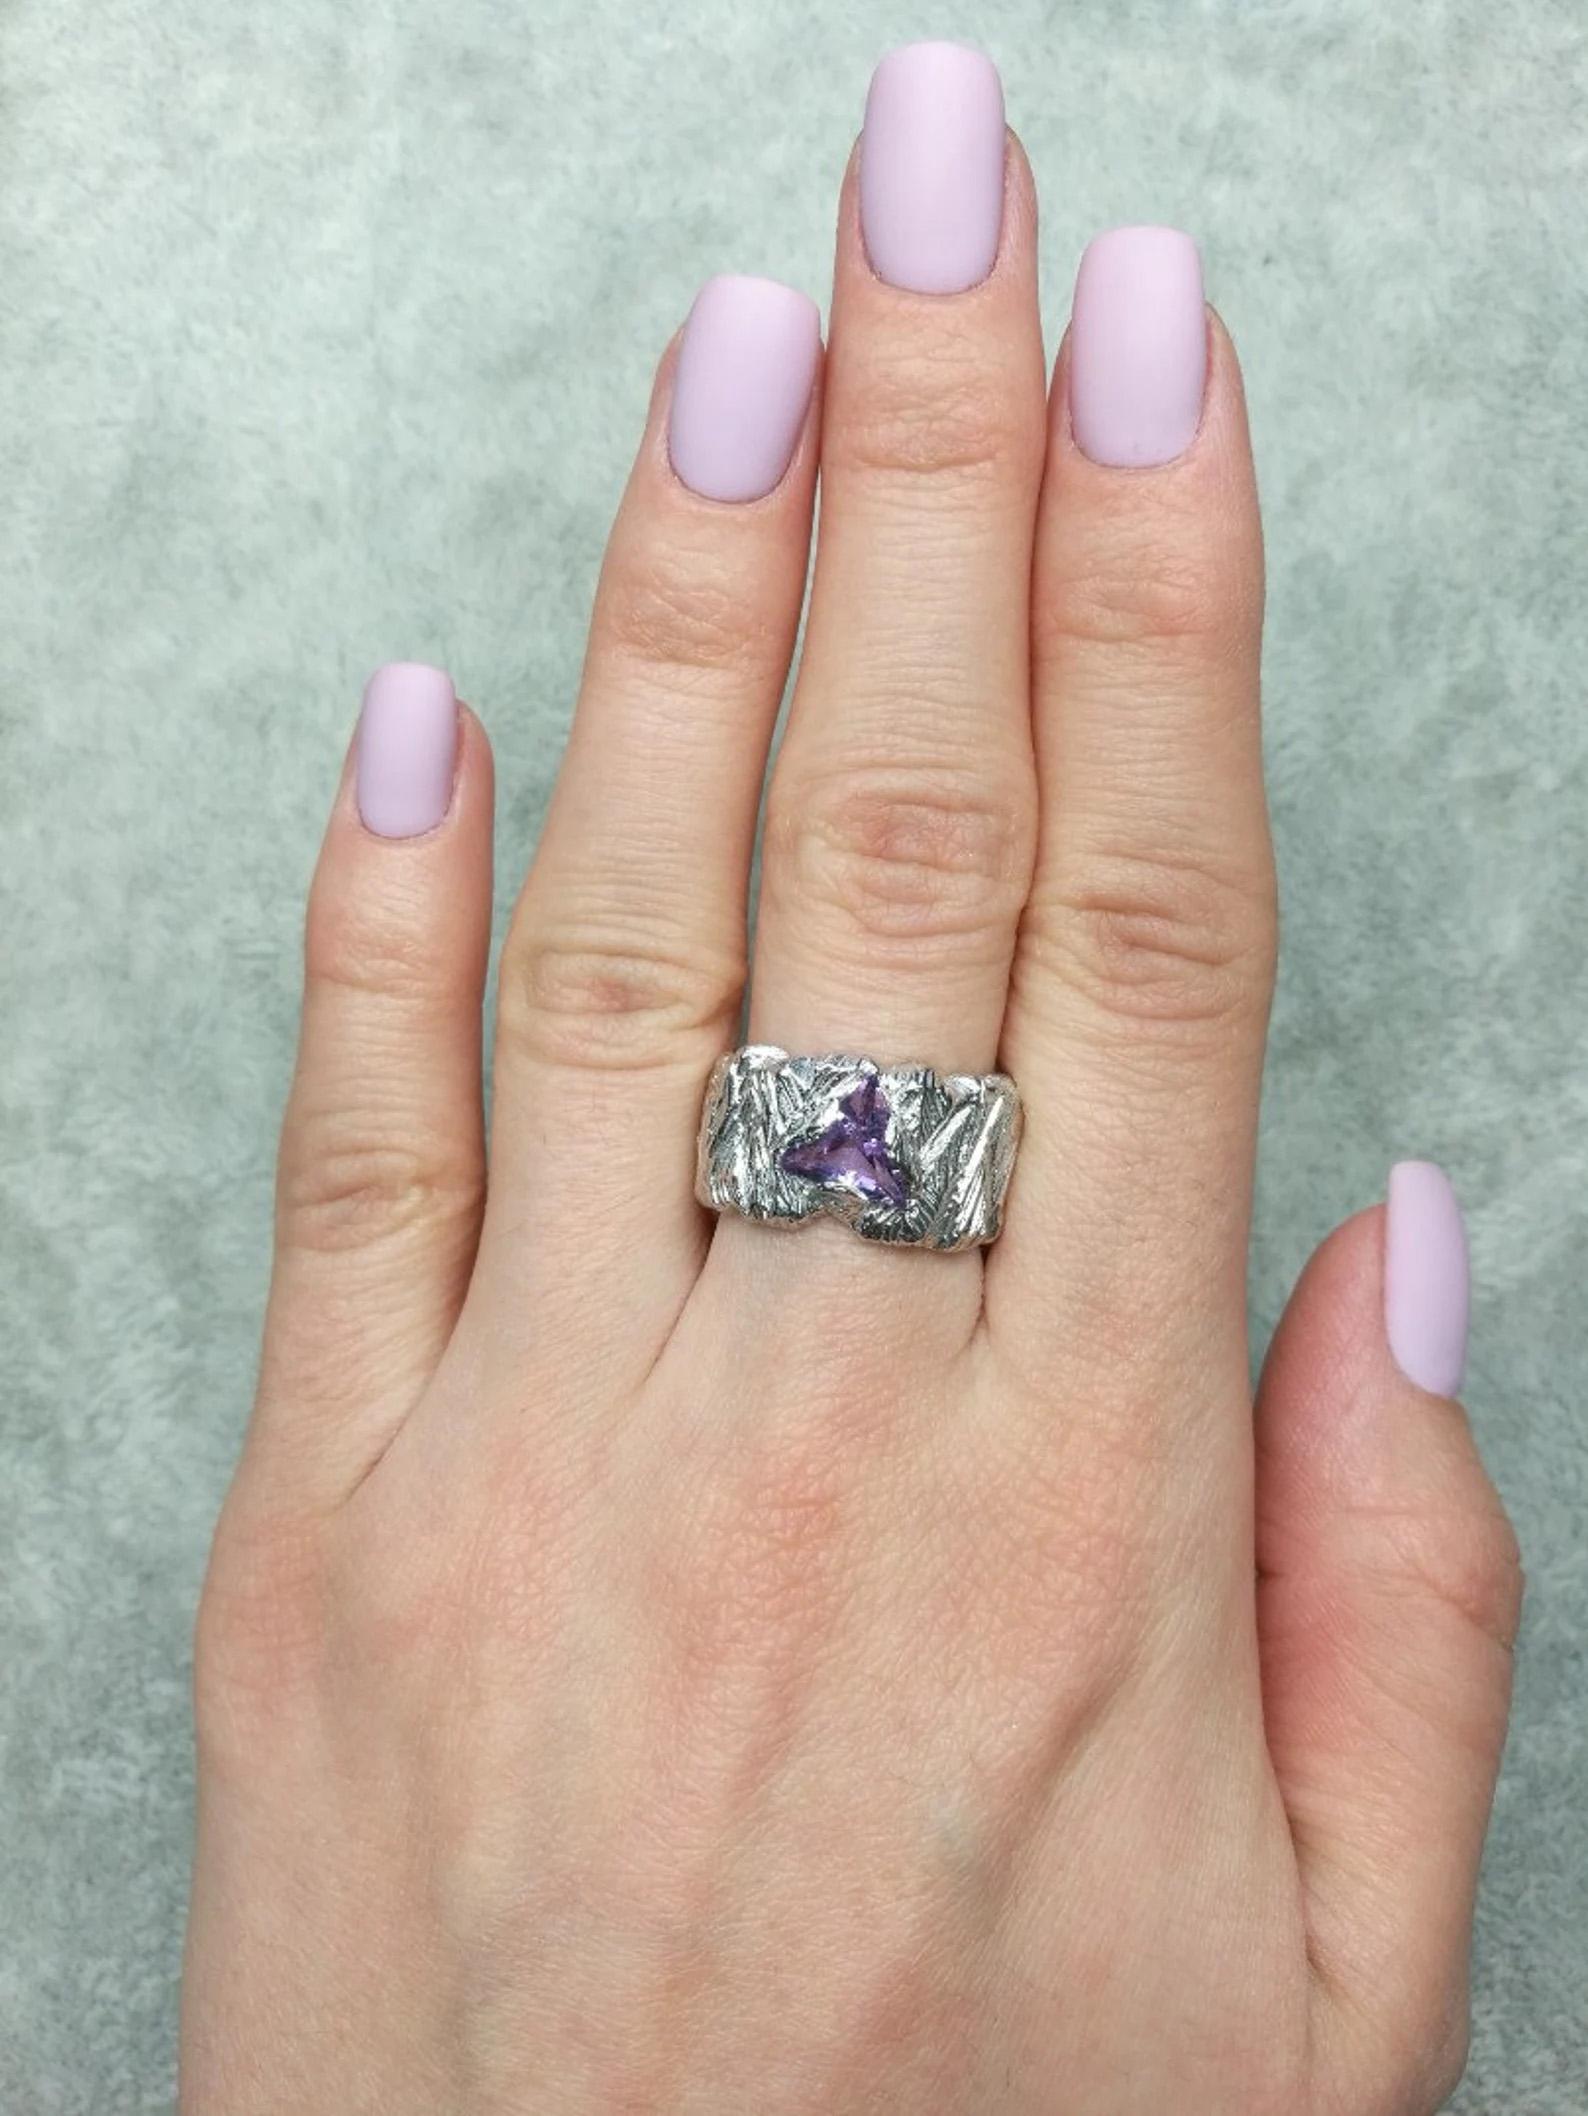 Artisan Big Amethyst Silver Ring Trilliant Fancy Cut Jewels Purple Violet Gemstone 